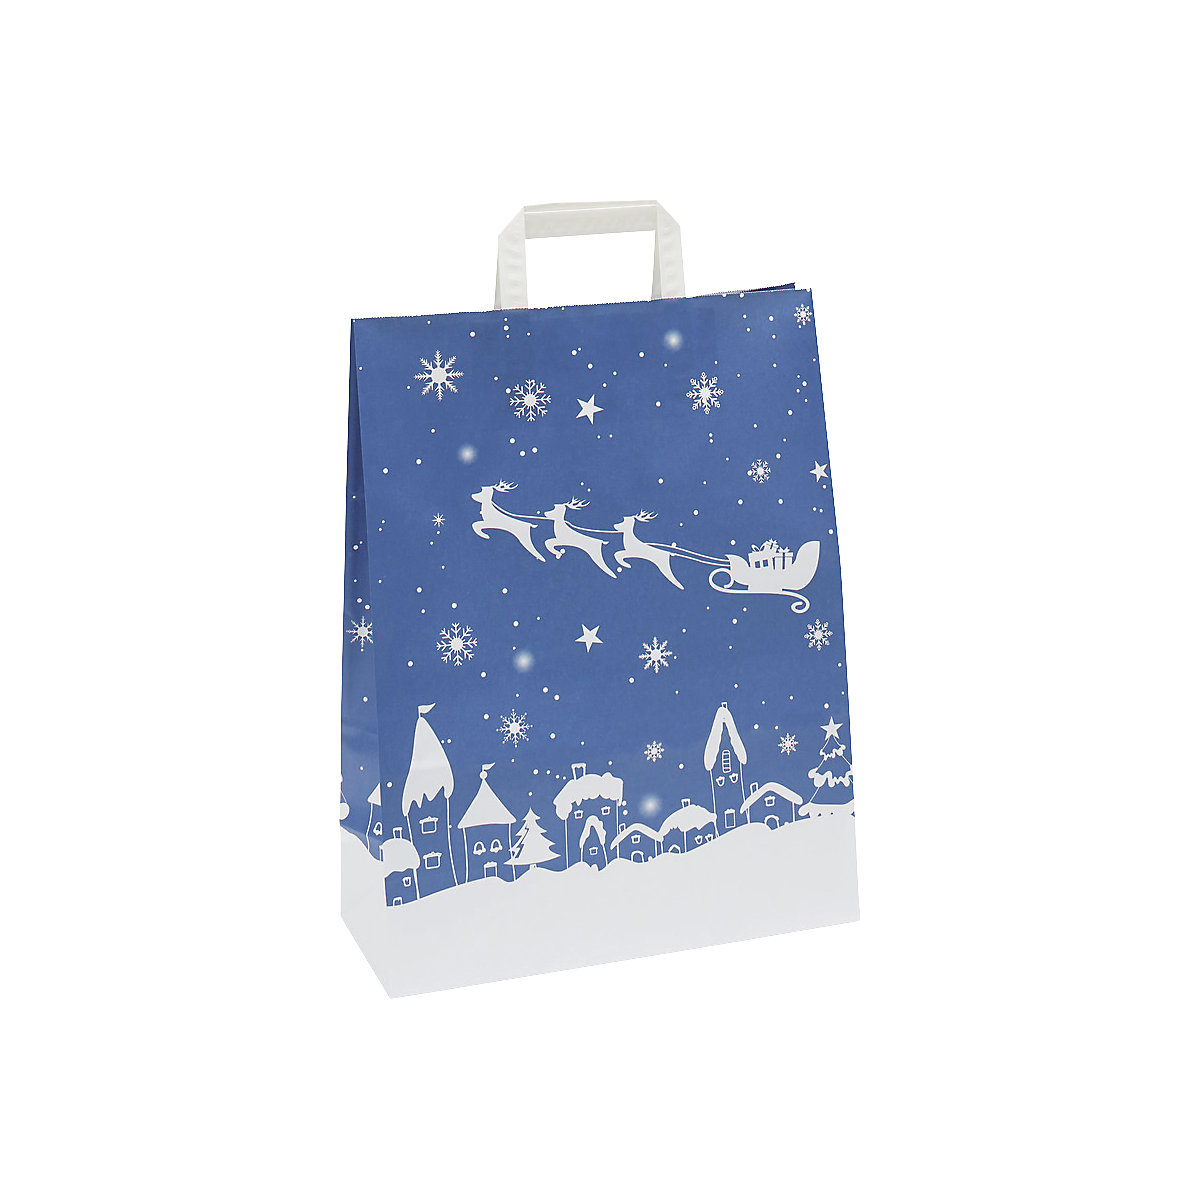 Papiertragetasche Weihnachten, blau/weiß gemustert, VE 25 Stk, LxBxH 320 x 140 x 420 mm, ab 20 VE-1